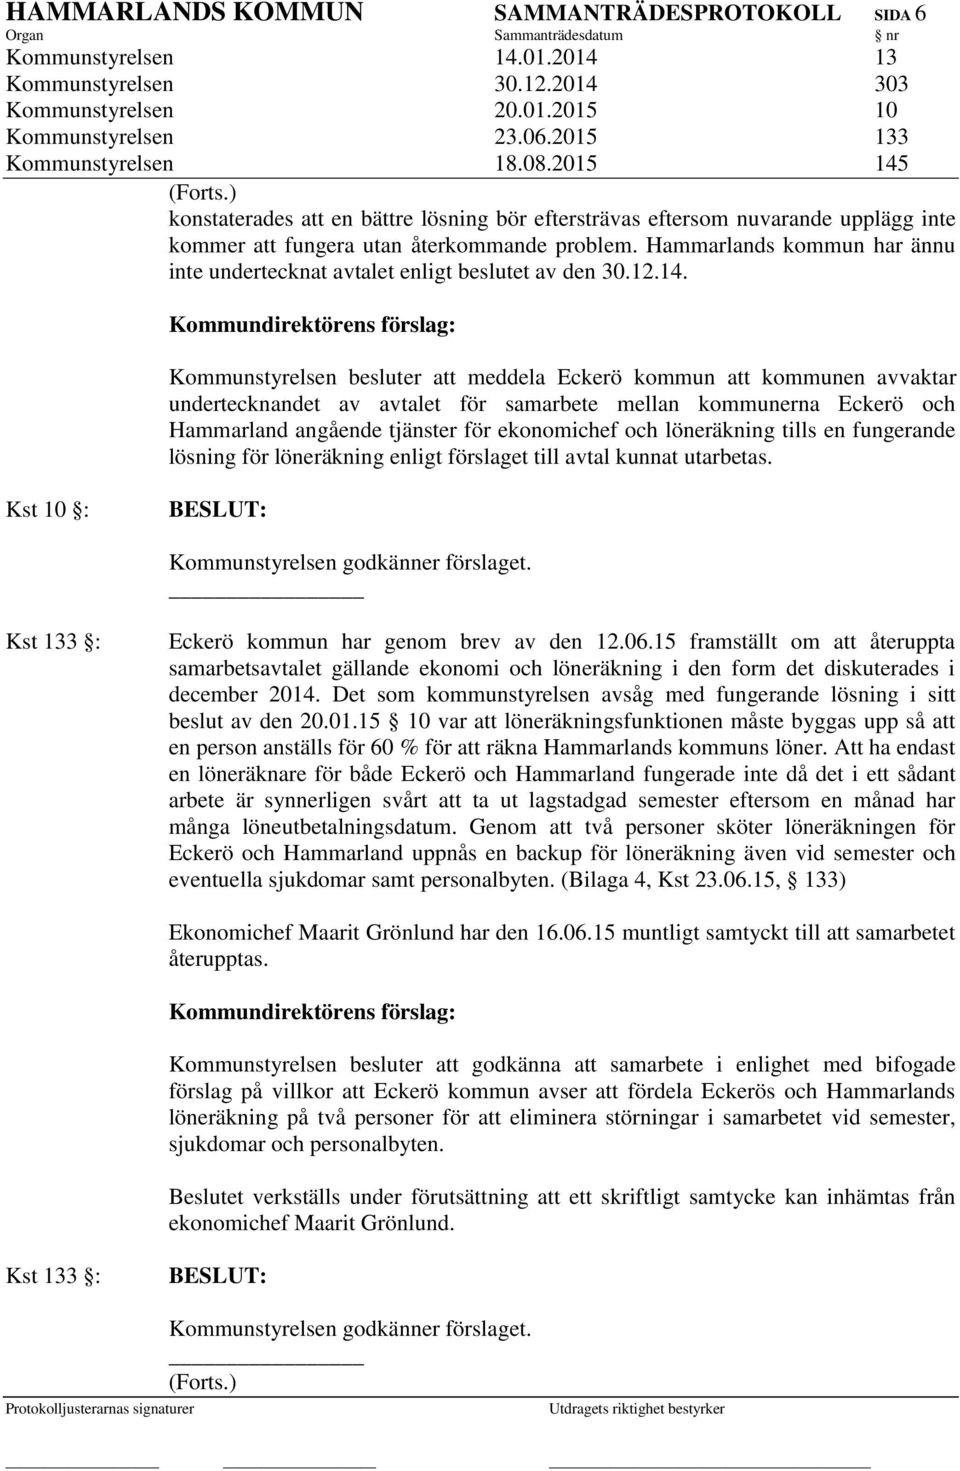 Hammarlands kommun har ännu inte undertecknat avtalet enligt beslutet av den 30.12.14.